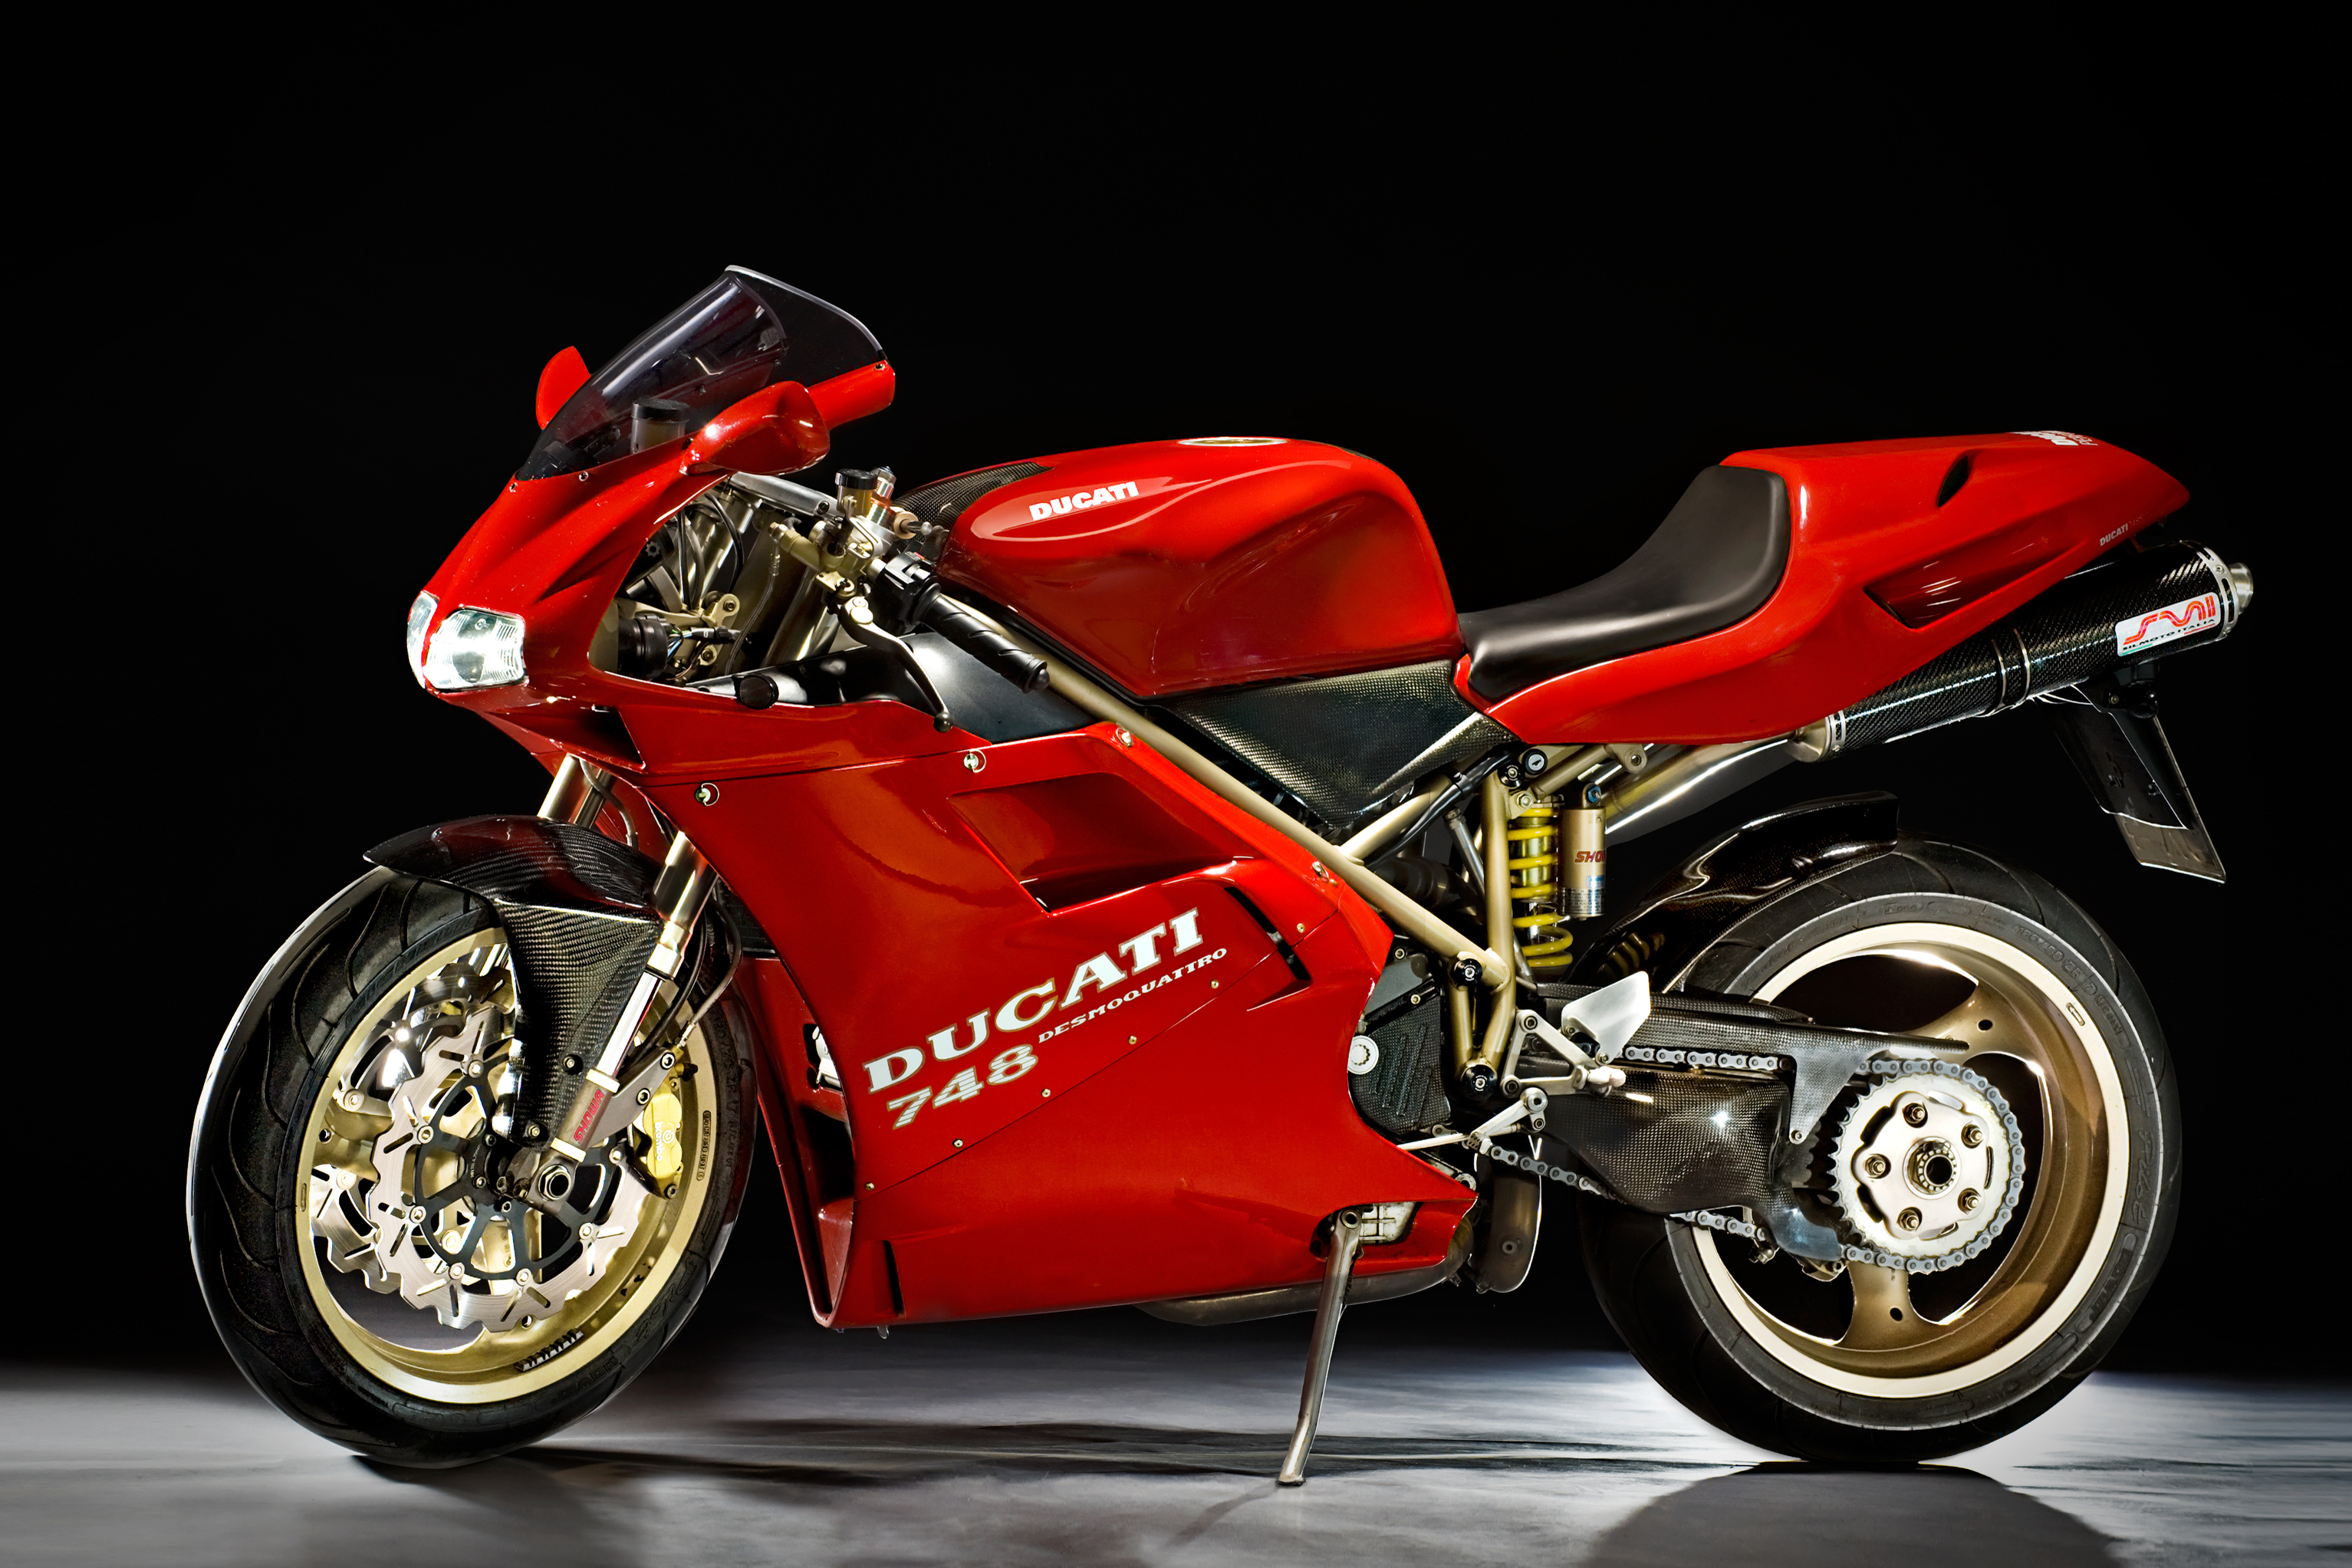 Ducati 748 Prospekt 1999 Motorrad Motorradprospekt Broschüre brochure broschyr 